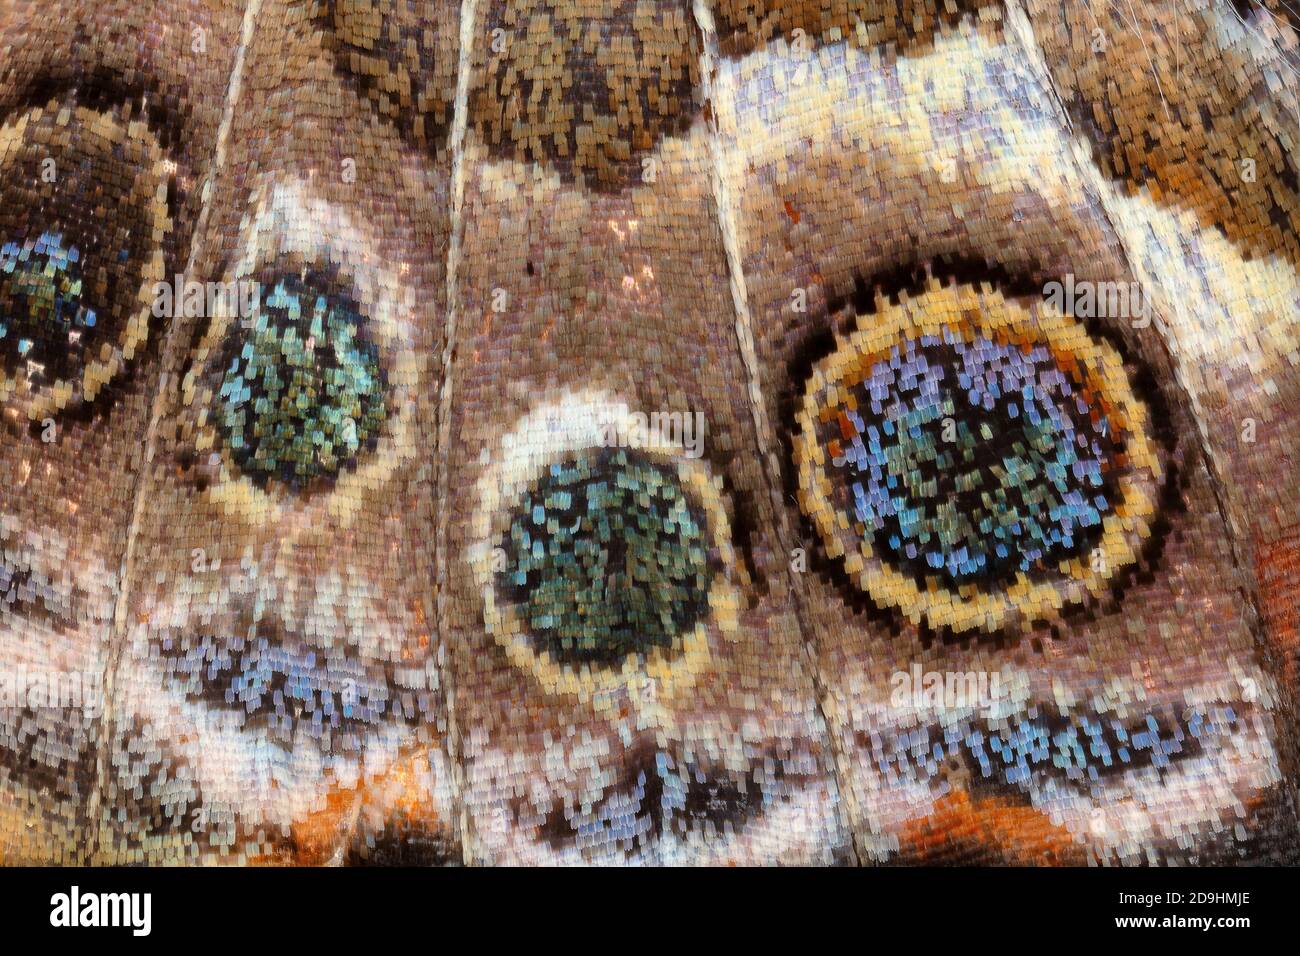 Detalle de escamas de mariposa de dama pintada, Vanessa cardui, 3x Foto de stock